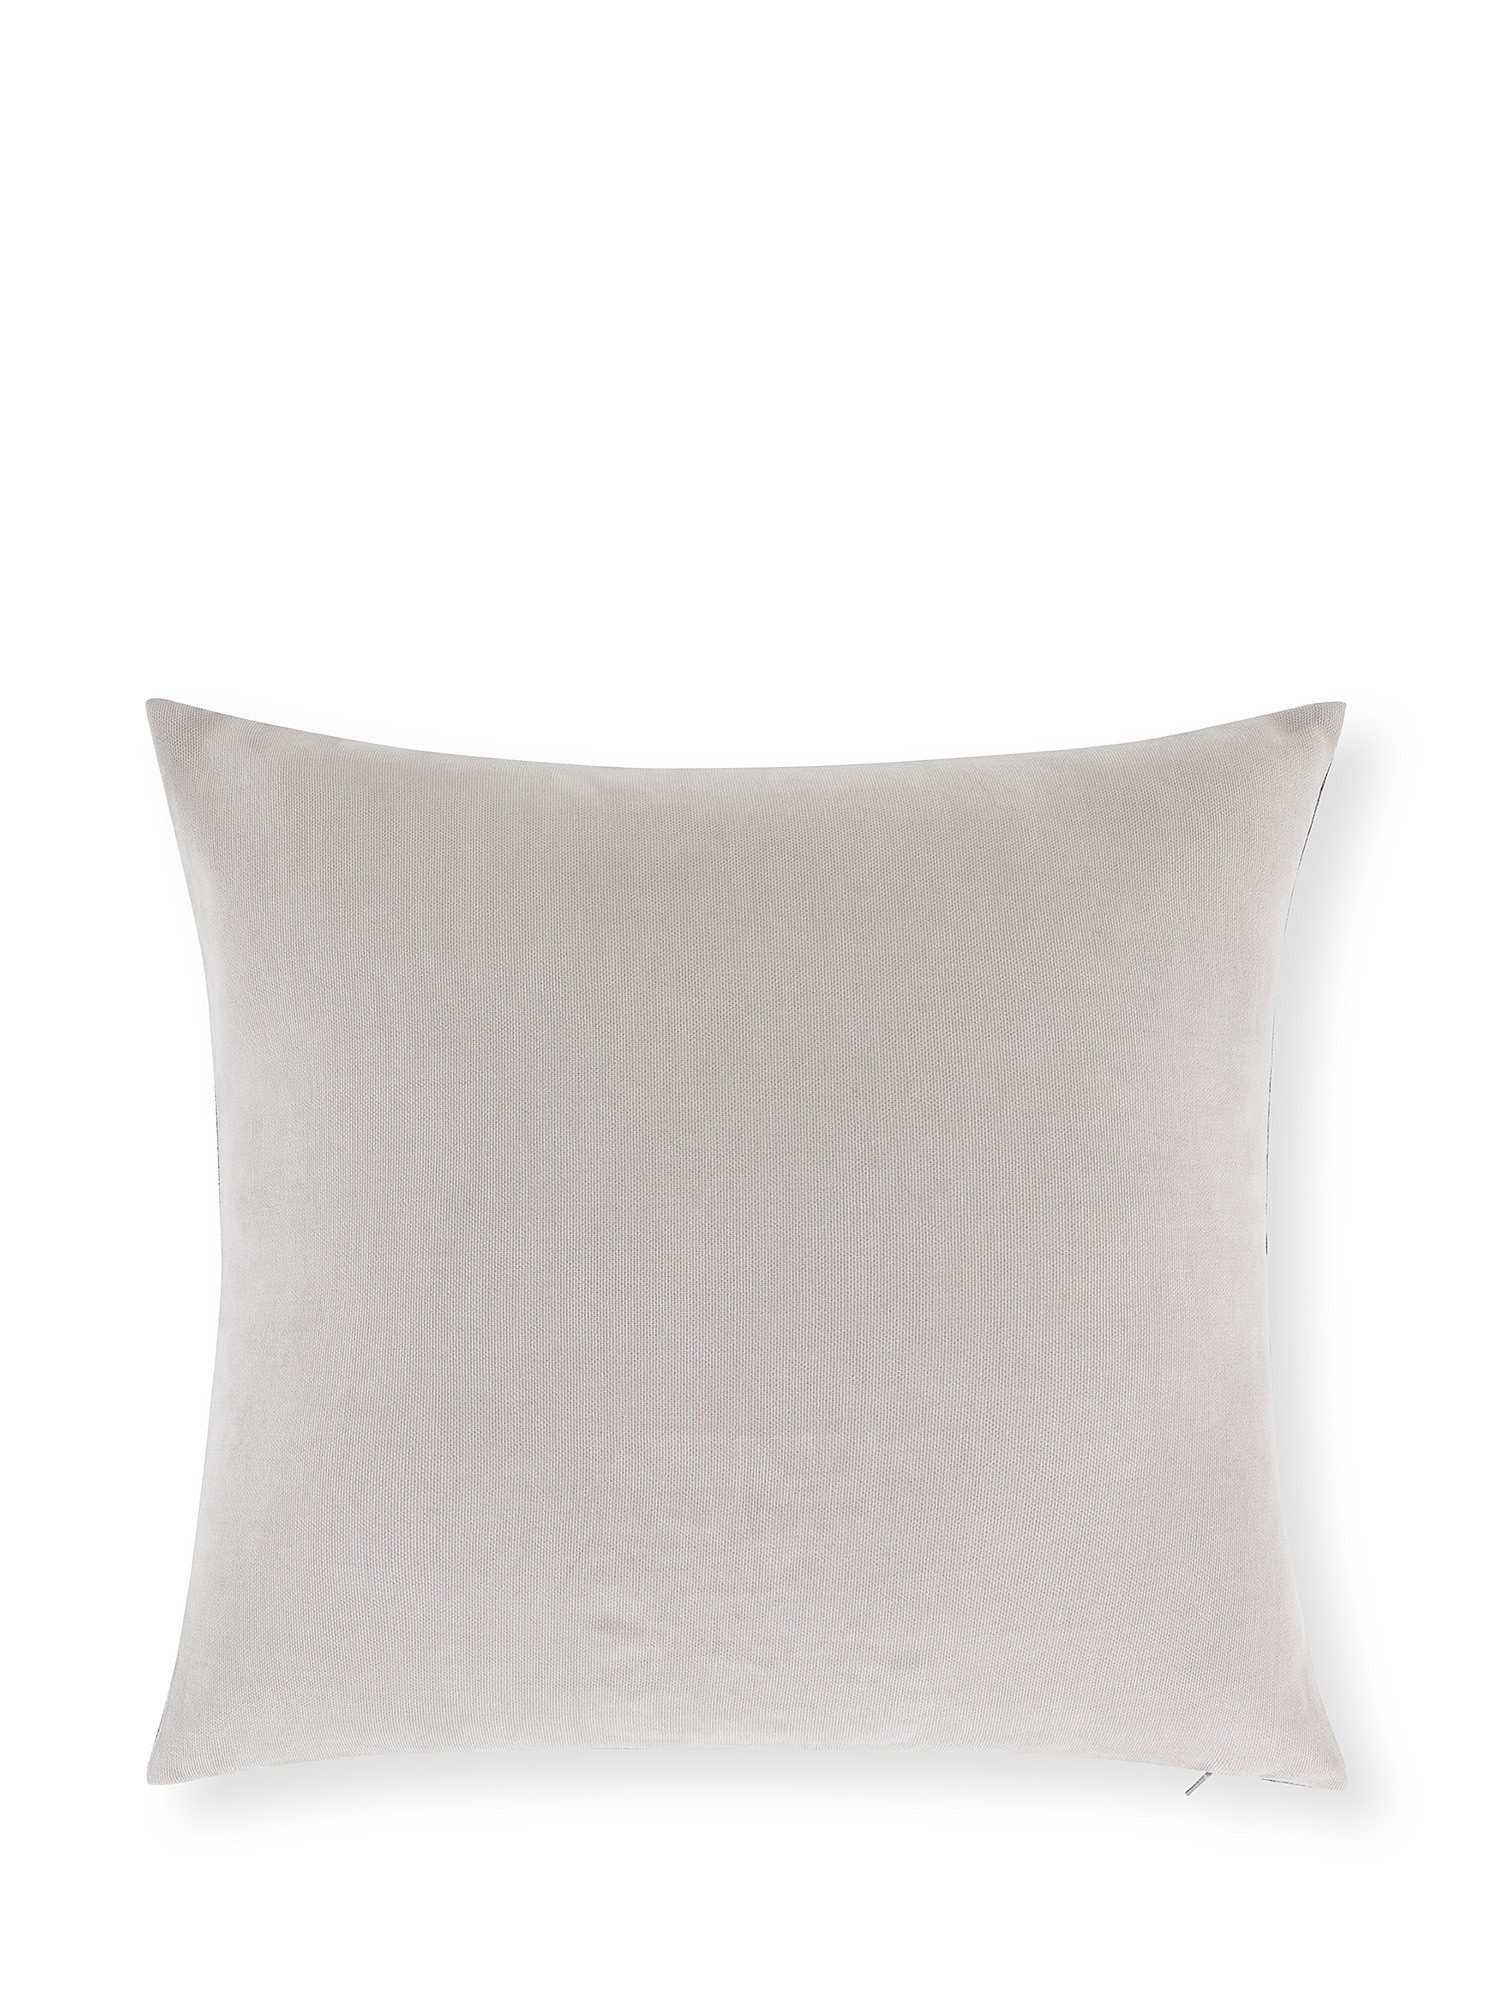 Palace motif jacquard cushion 45x45cm, Grey, large image number 1